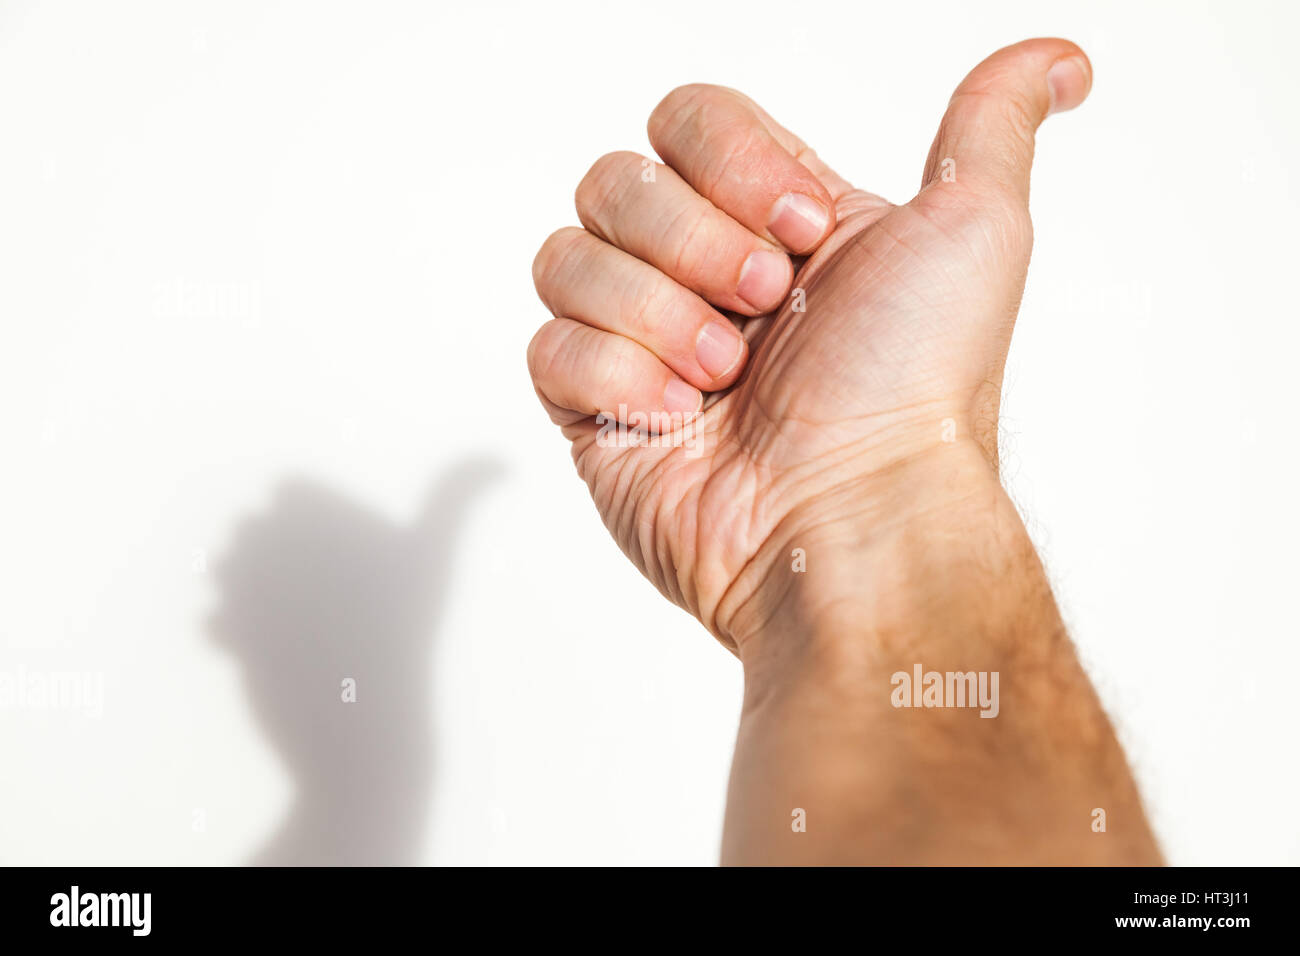 Main montre homme Thumbs up sur mur blanc avec fond ombre douce, comme il concept Banque D'Images